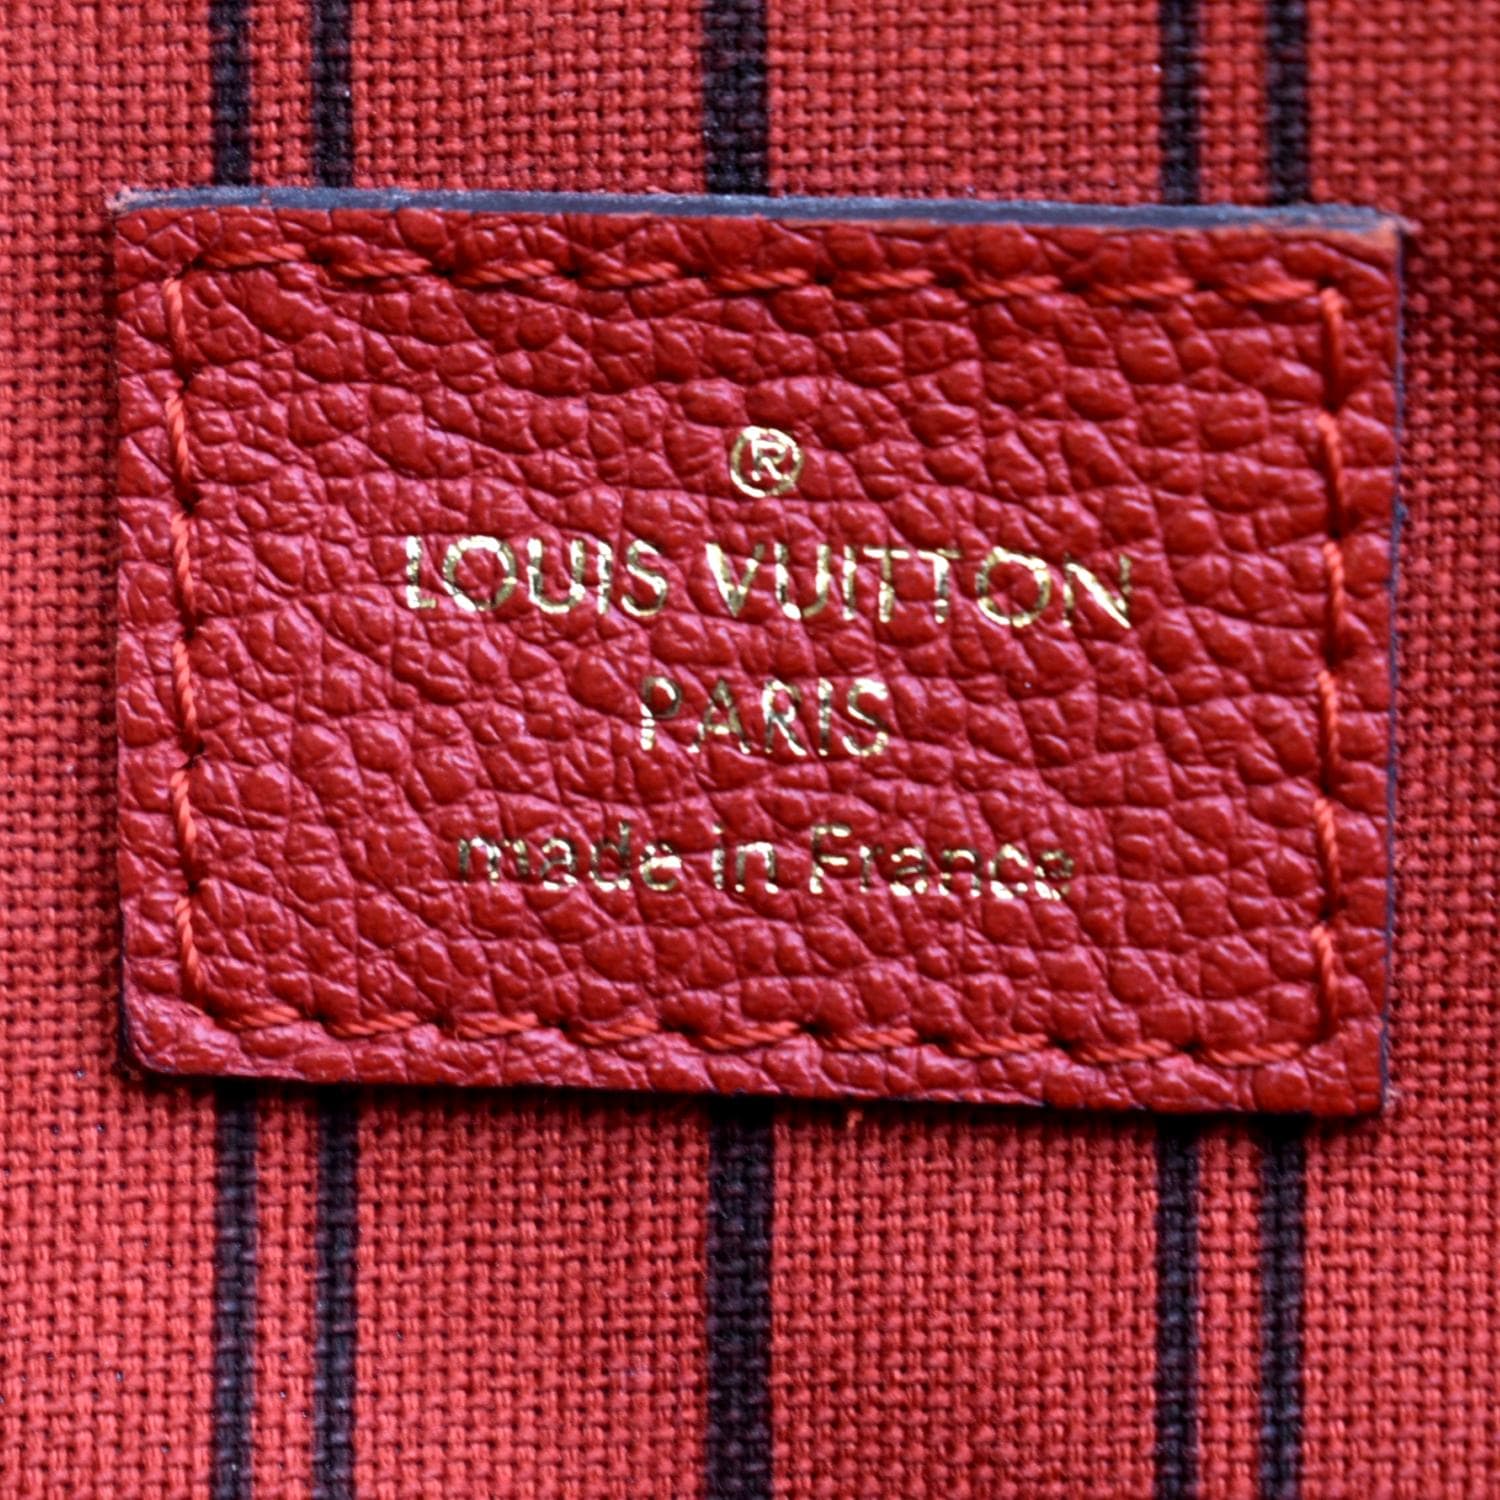 Louis Vuitton Bastille PM Empreinte Shoulder Bag